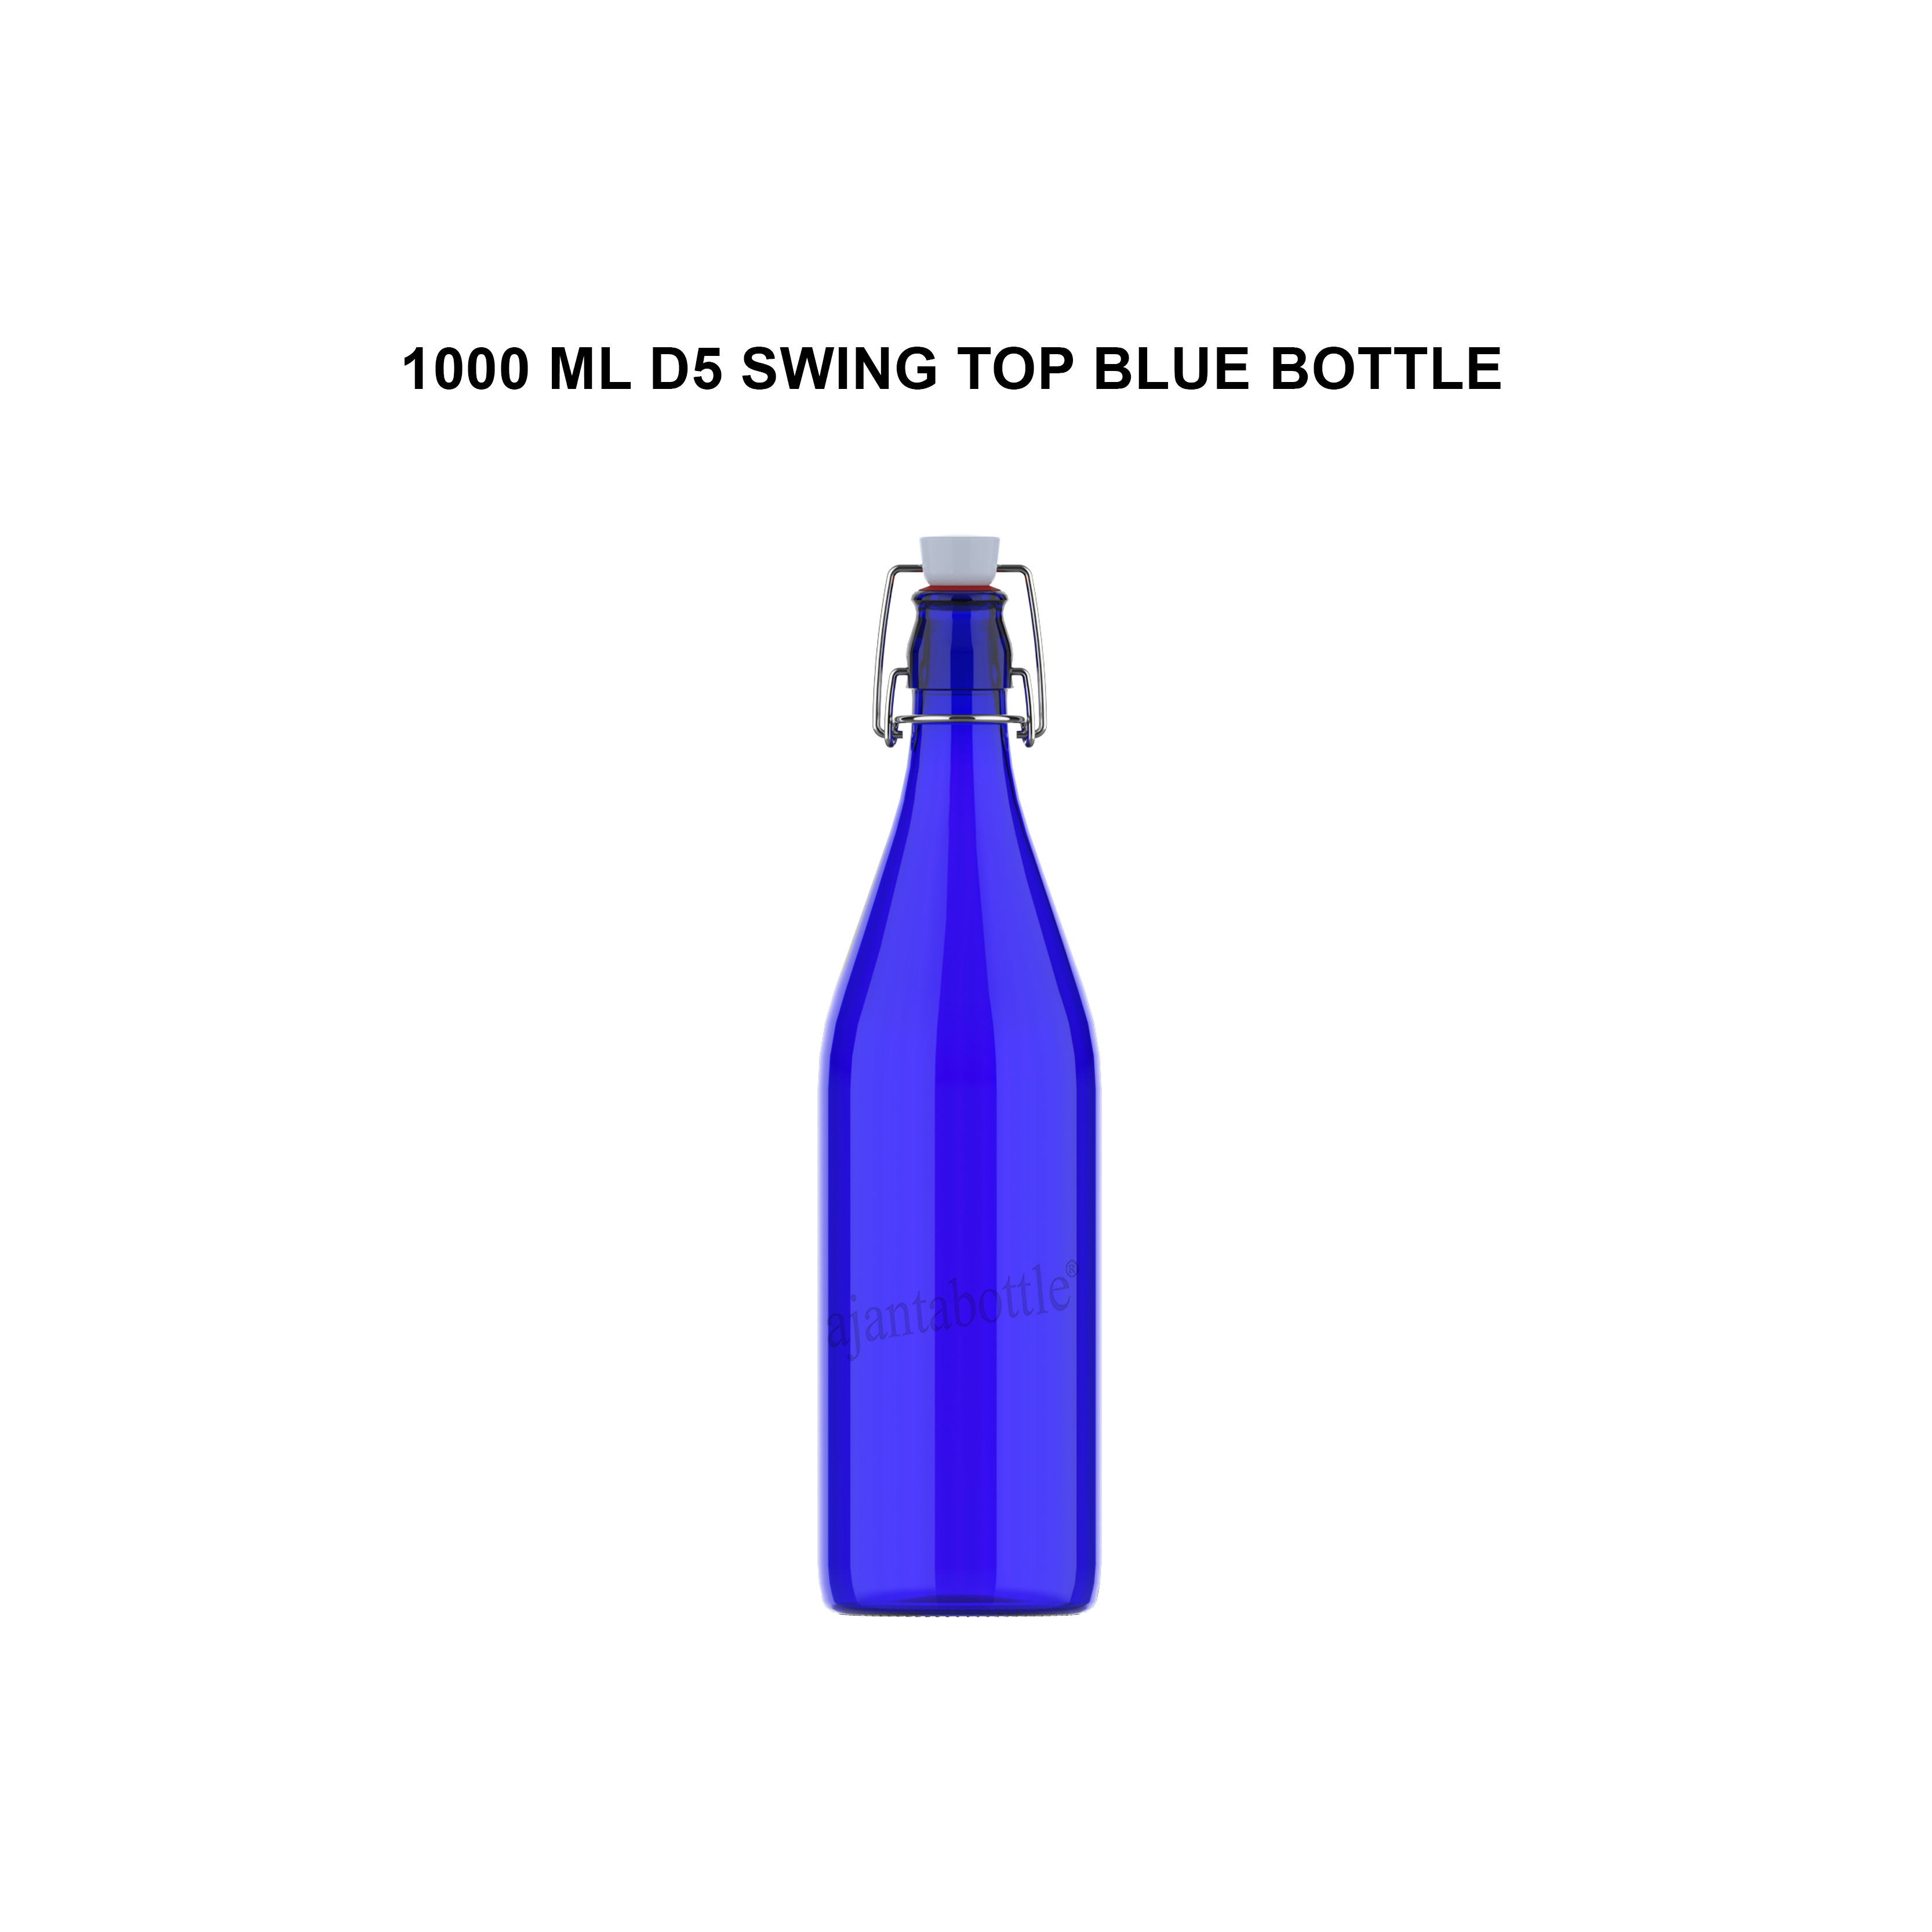 100 ML CHAMP PERFUME GLASS BOTTLE - Ajanta Bottle Pvt Ltd 